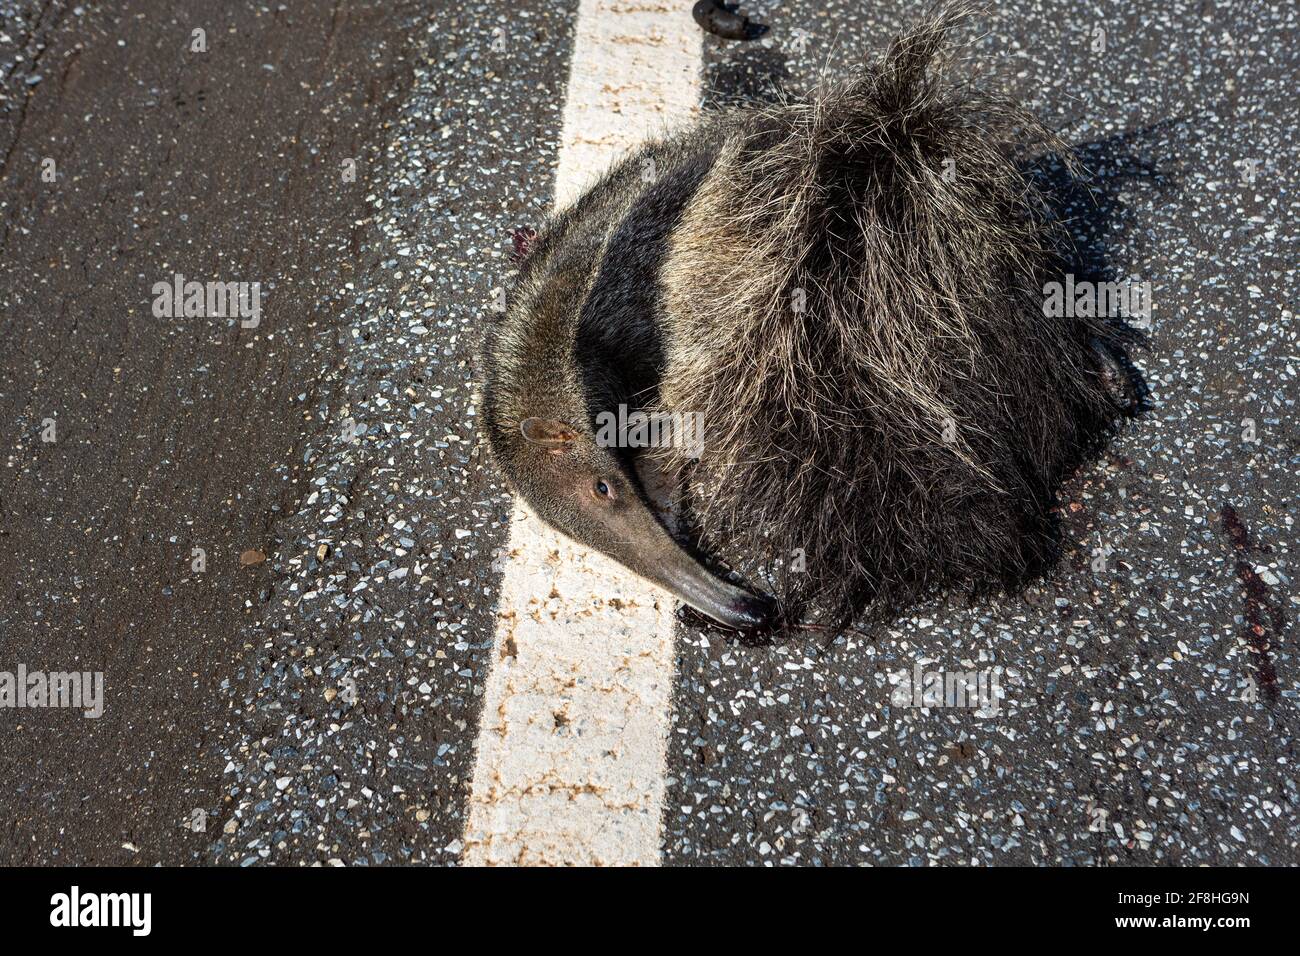 Un'anteater gigante morto, Myrmecophaga tridactyla, scesa, ucciso da un veicolo in viaggio. Uccisione di animali selvatici nella foresta amazzonica, in Brasile. Foto Stock